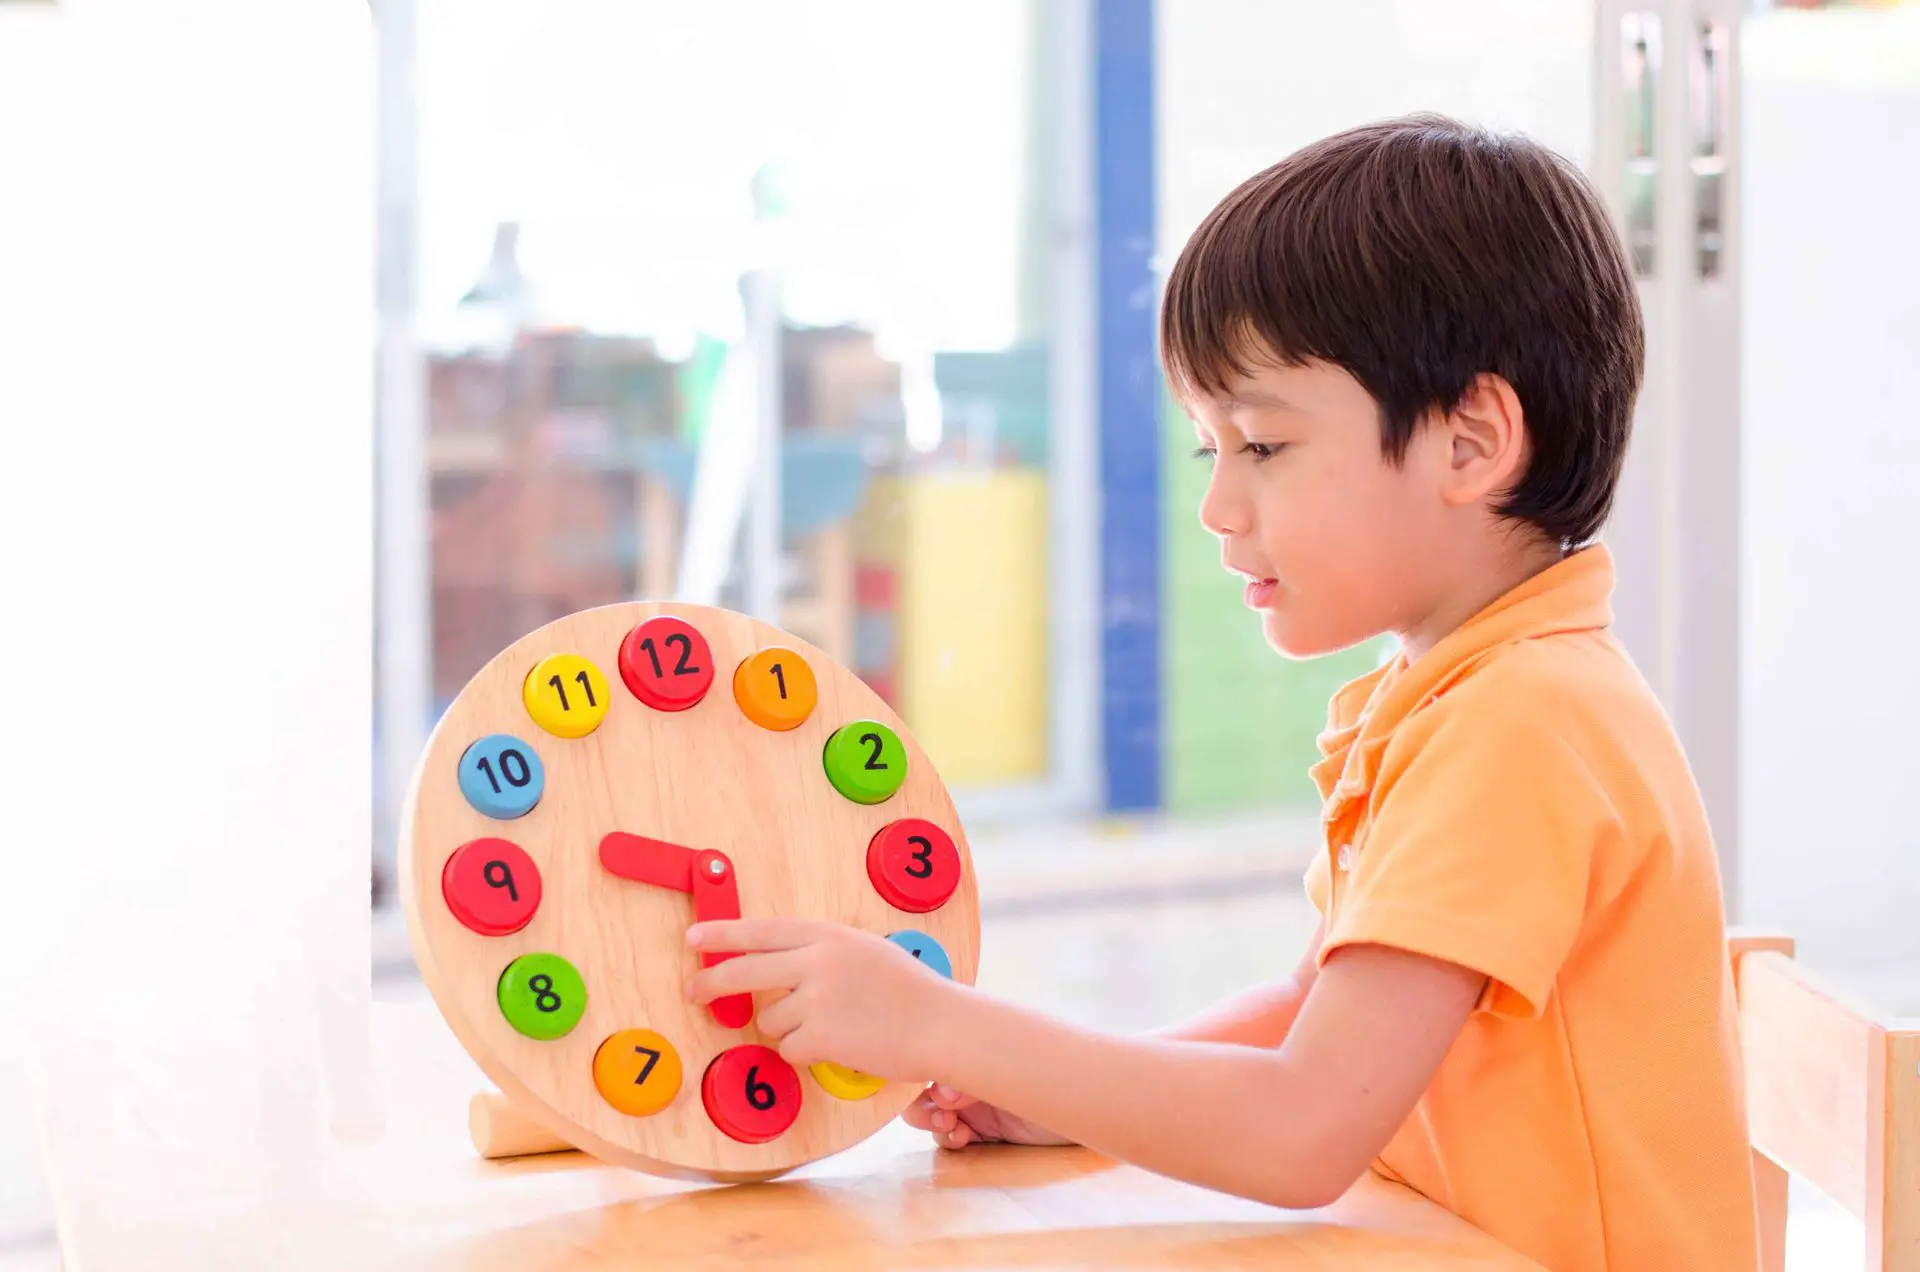 juegos de aprendizaje para ninos para aprender a leer el reloj